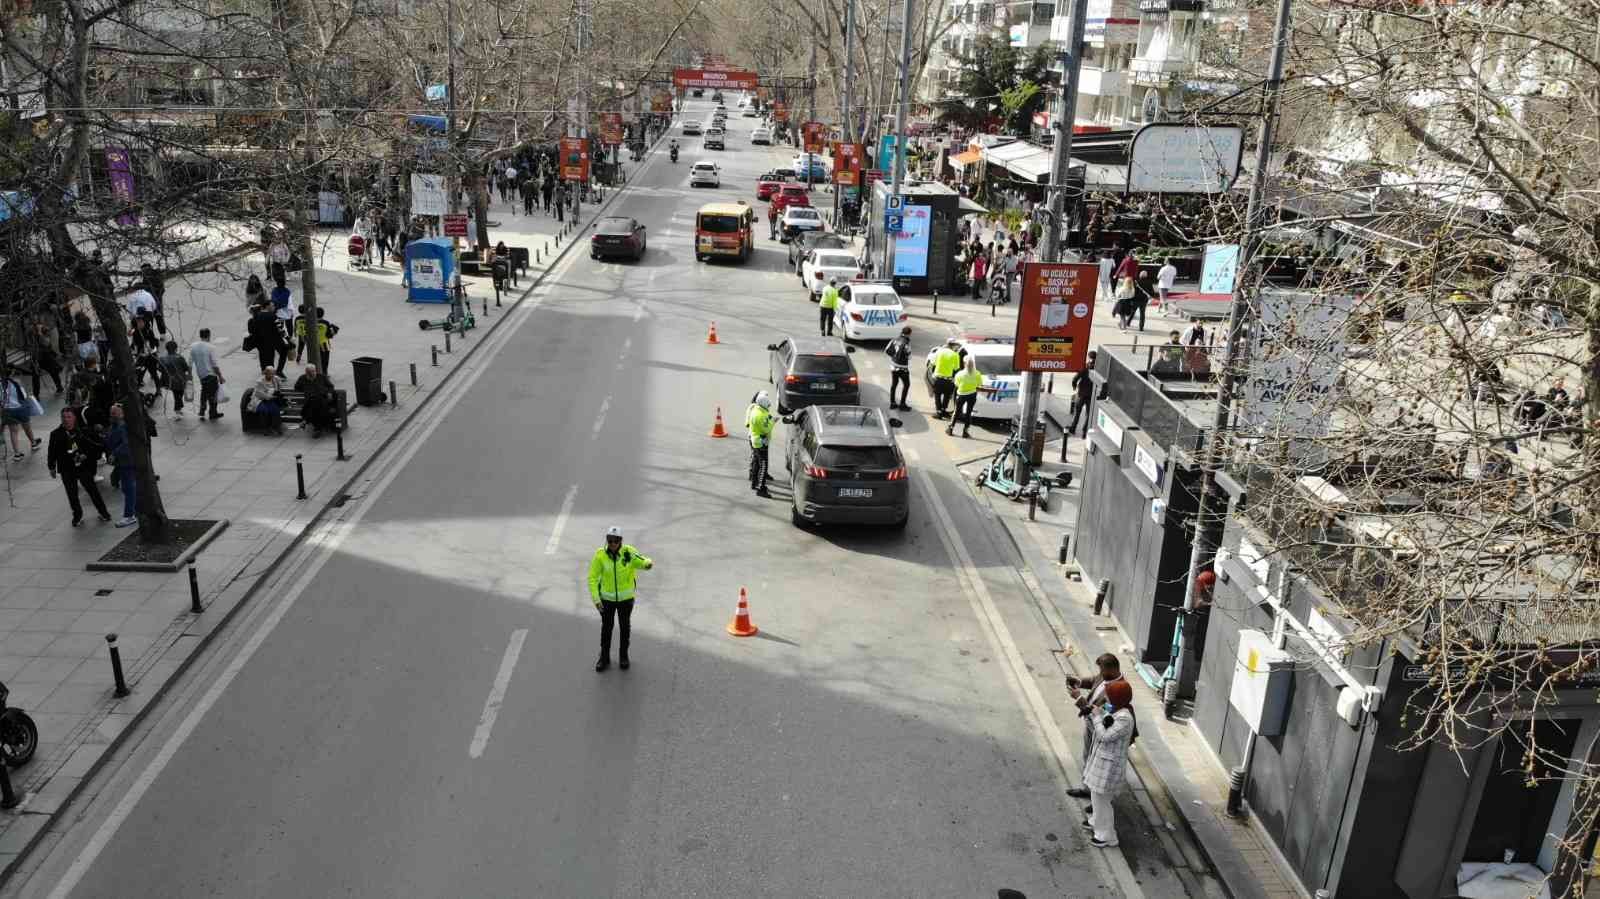 Kadıköy Bağdat Caddesi’nde görevli kadın trafik polisleri, araç yoğunluğunun yaşandığı ana arterlerde, trafik düzenini sağlamak için özveriyle ...